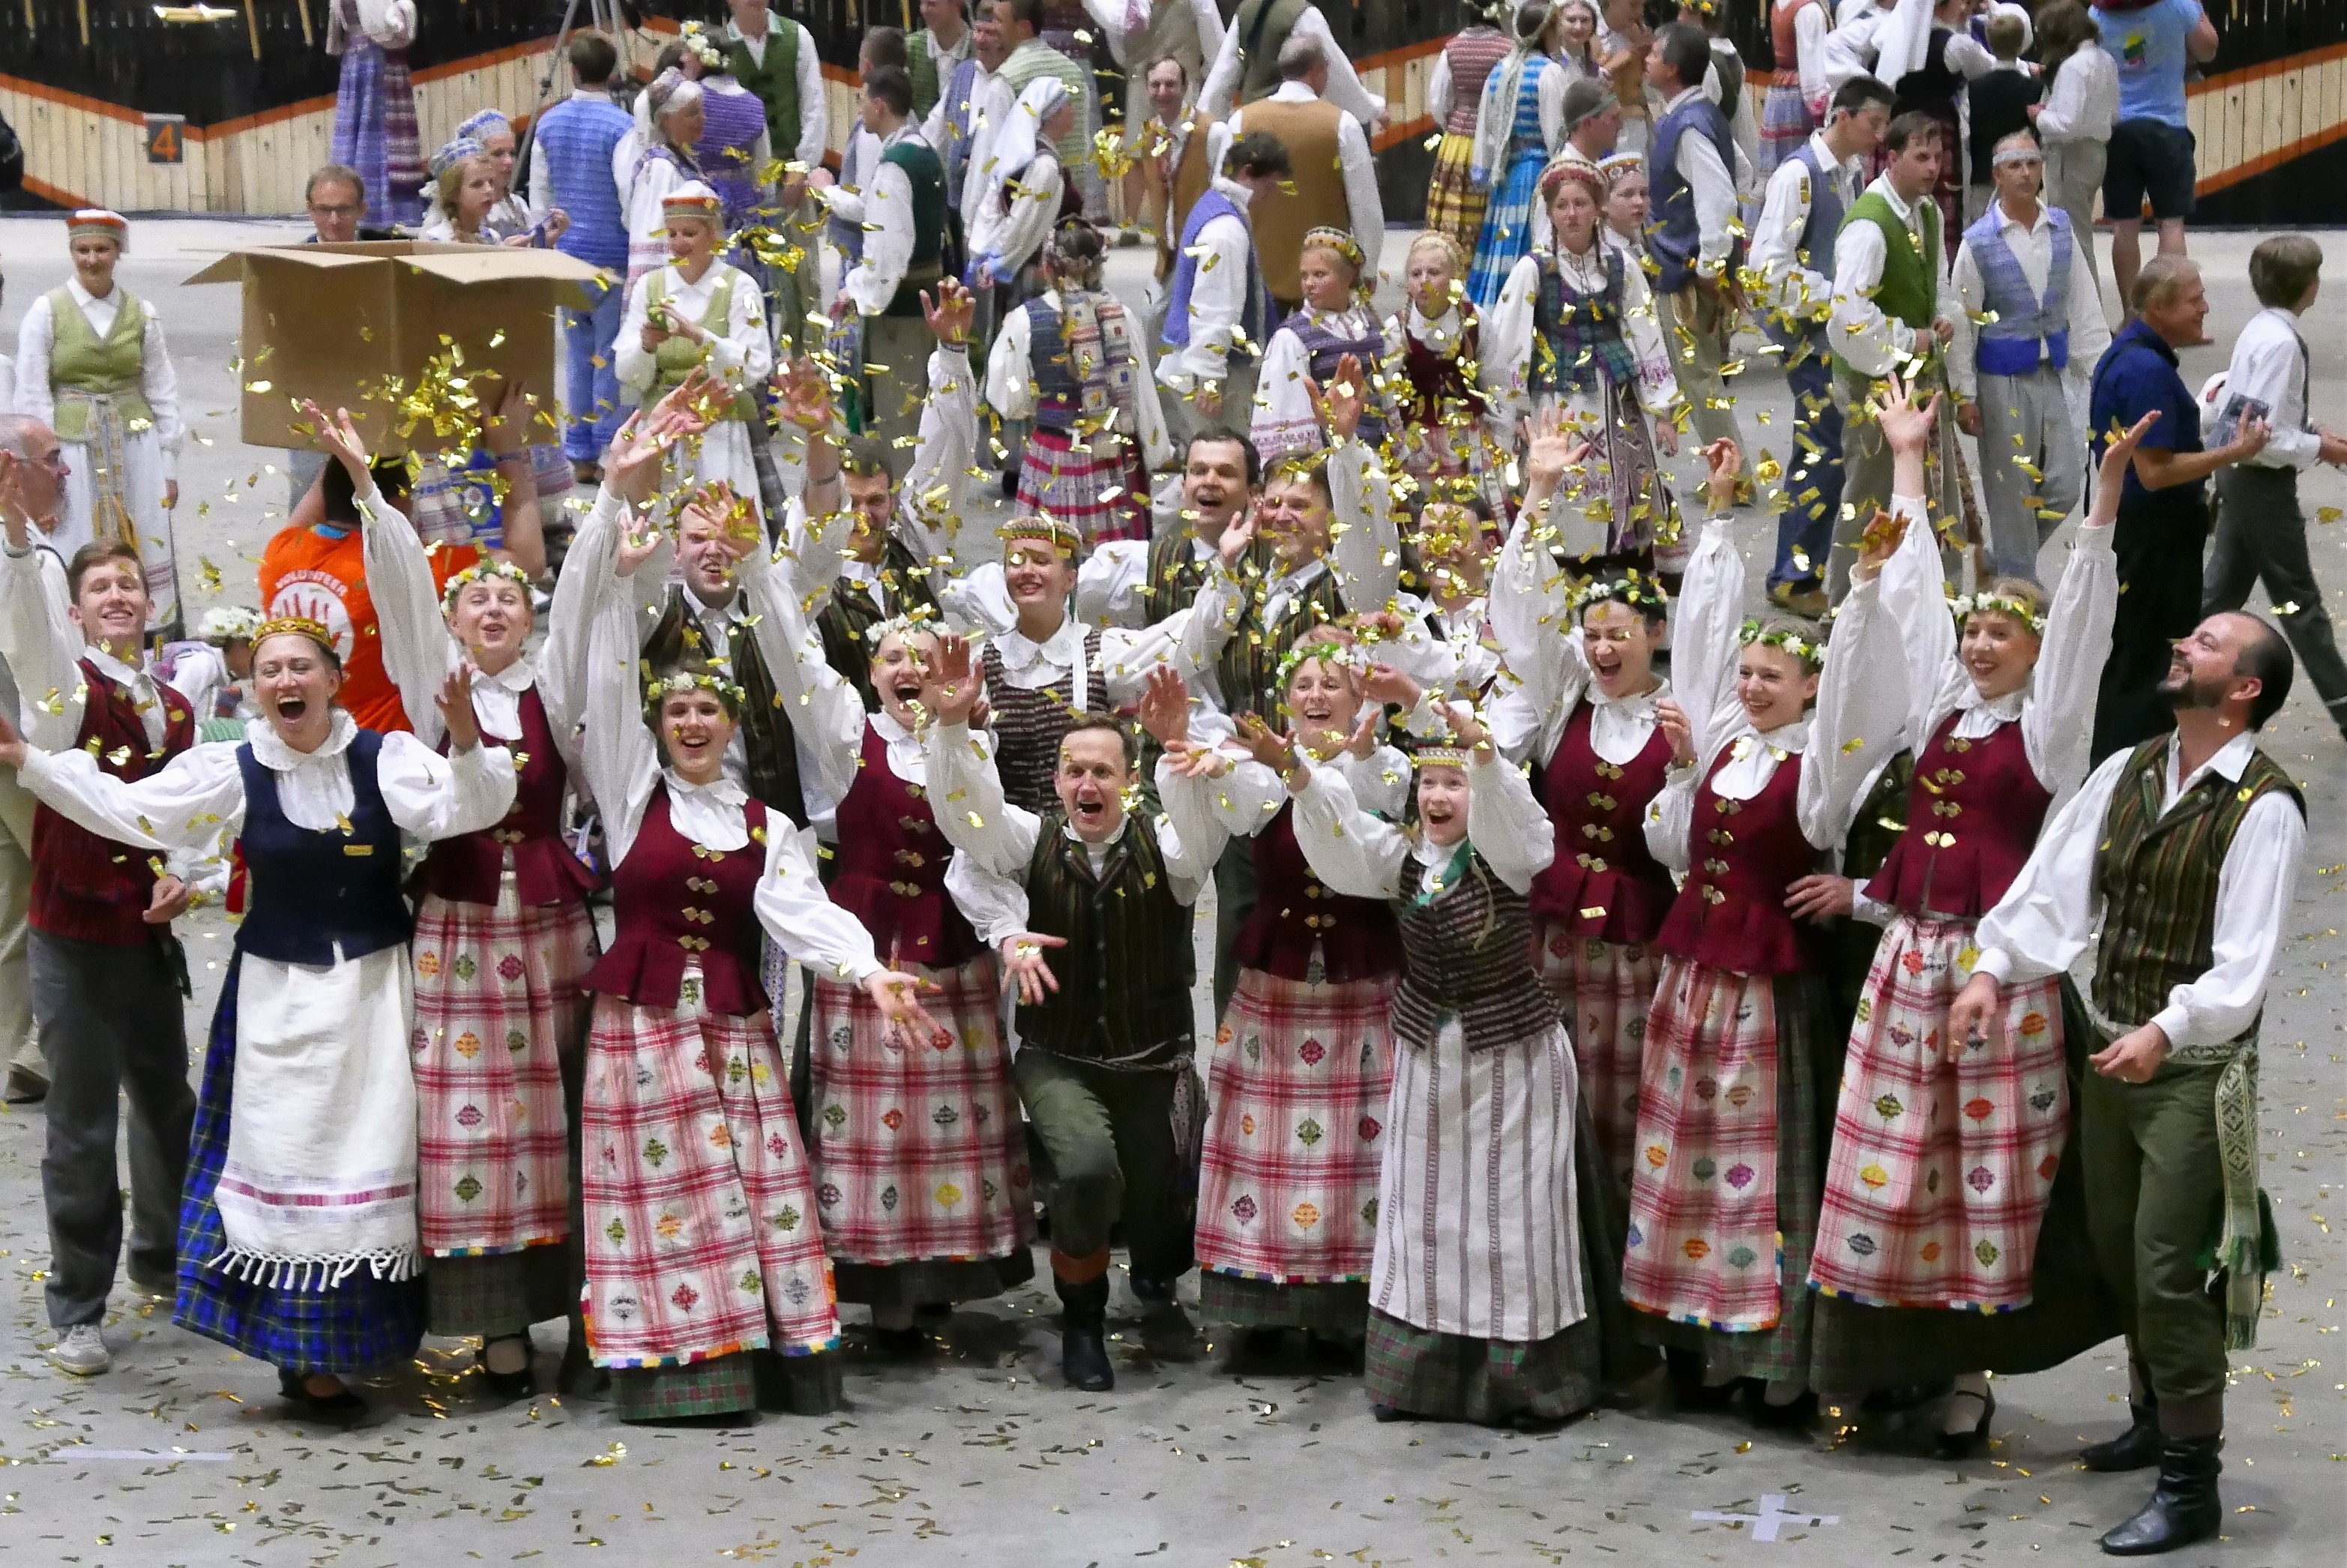 Į šventę atvyko net ir lietuvaičiai iš Švedijos – šokių grupė ,,Baltija”.